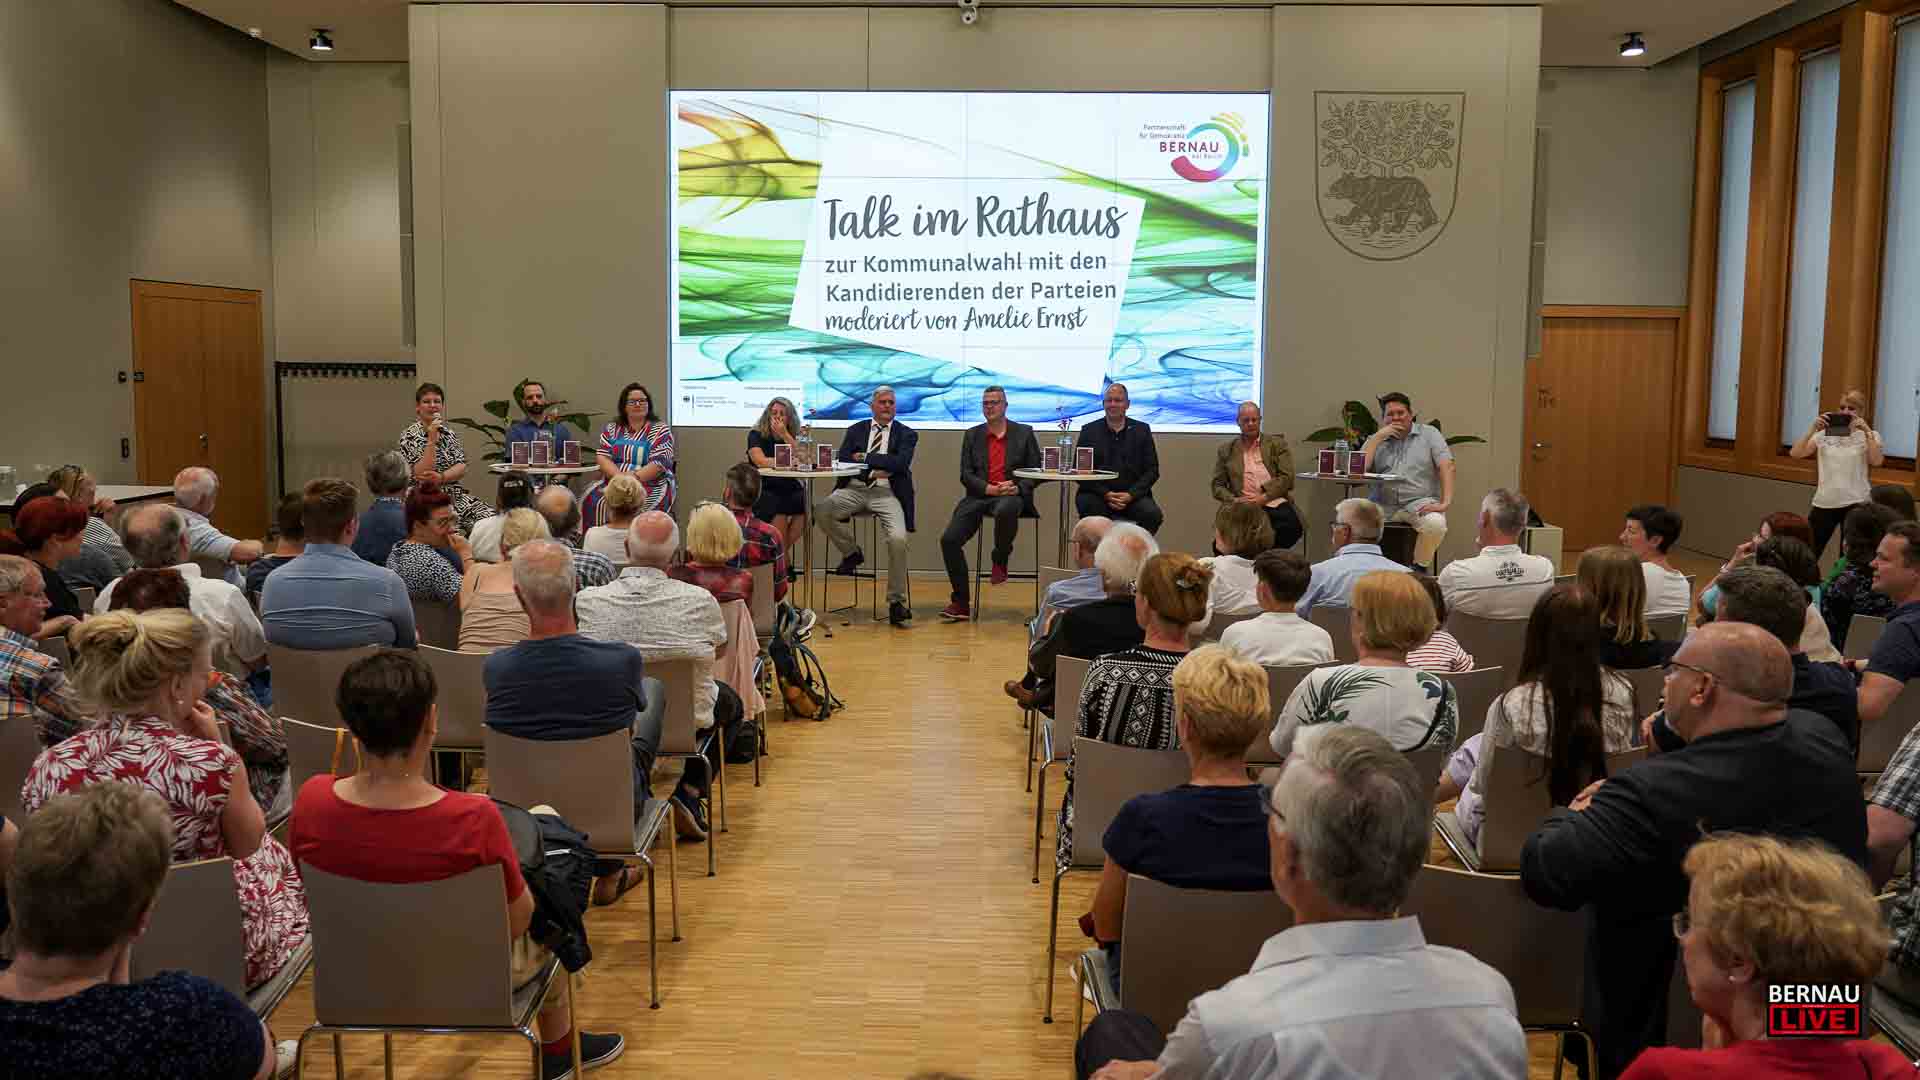 Talk im Ratshaus Bernau – Politiker stellten sich den Fragen des Publikums